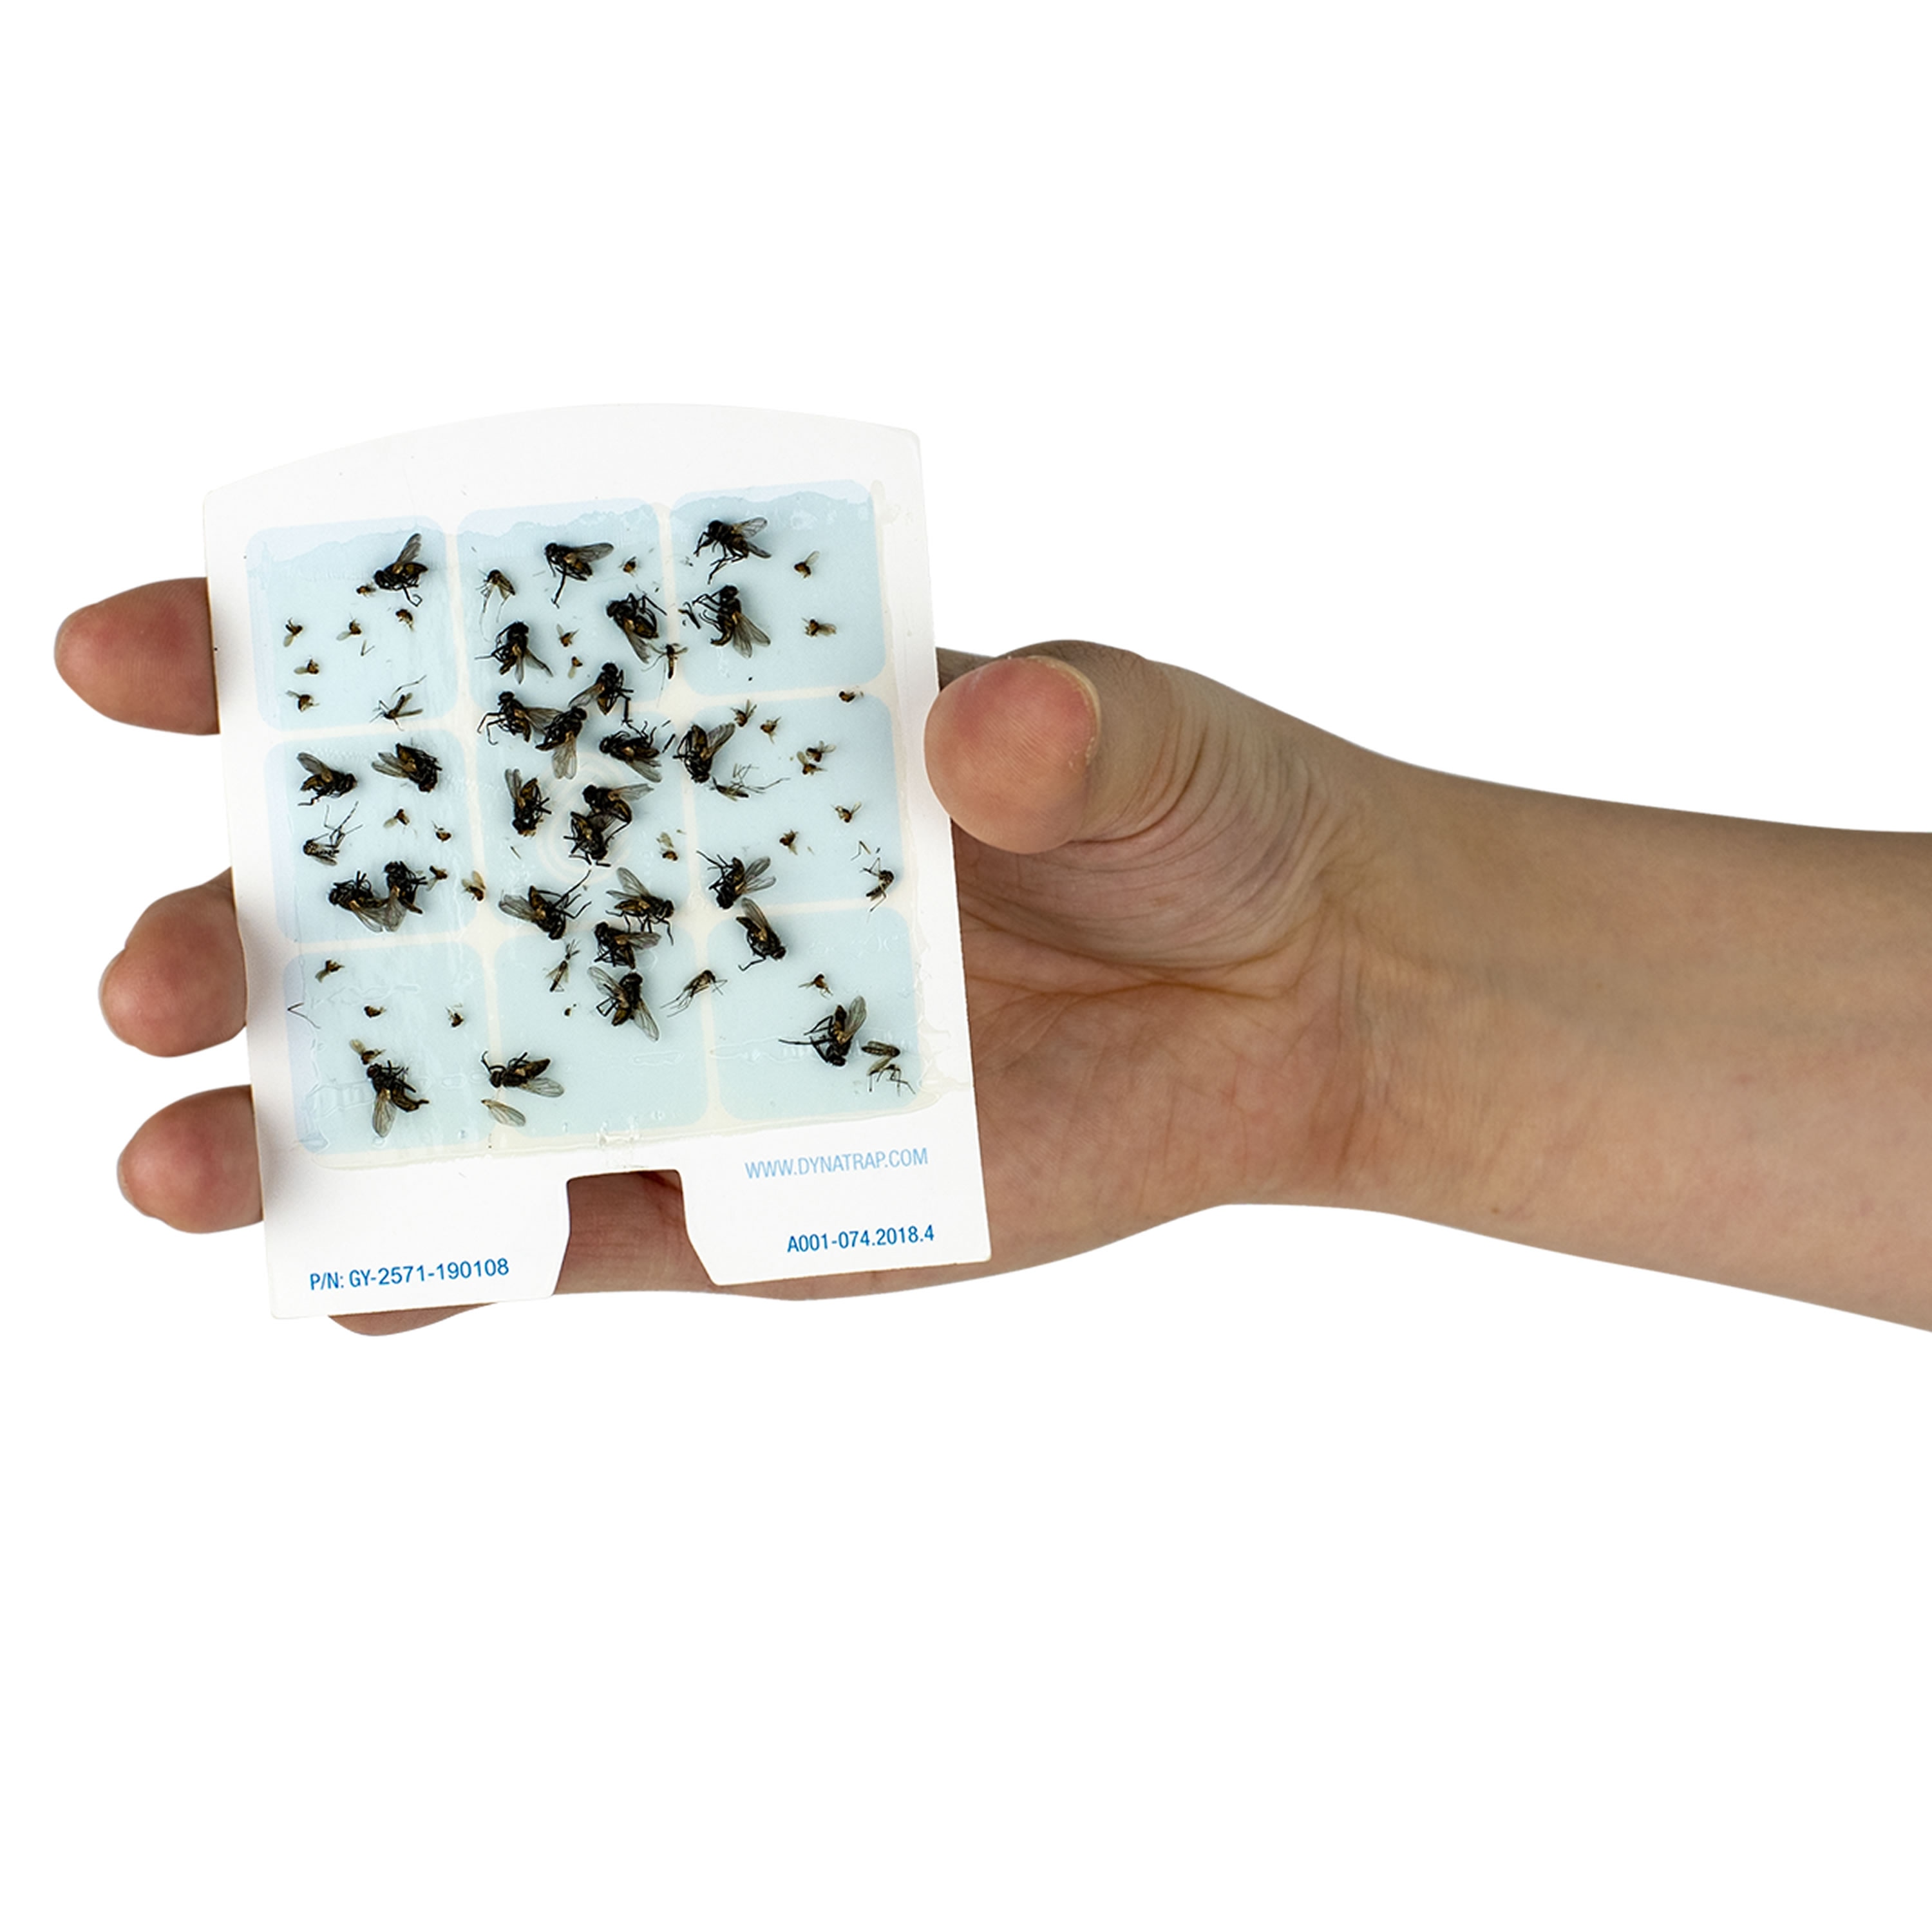 Dynatrap Stickytech Glue Cards